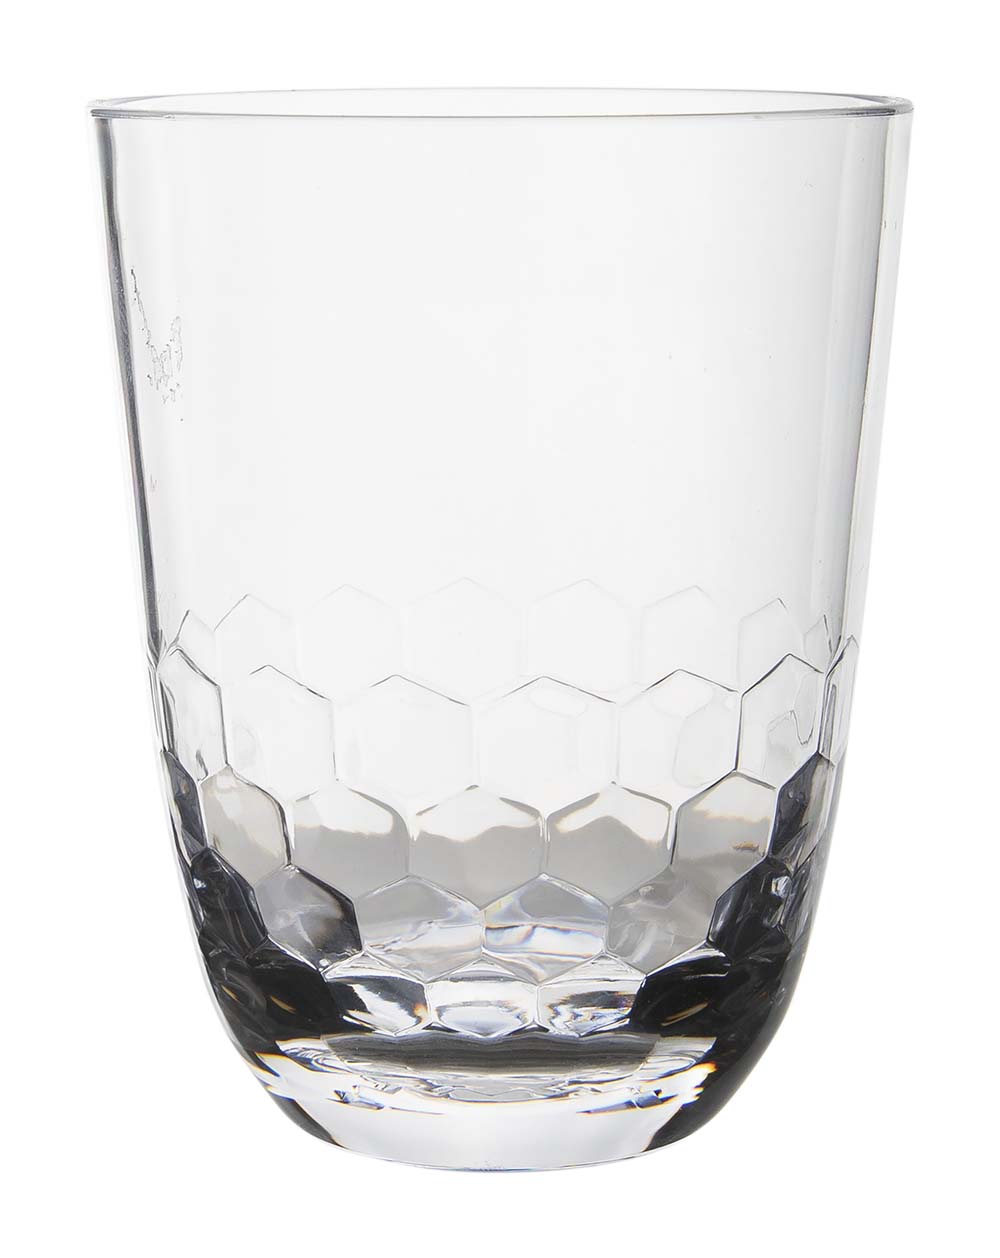 6968940 Een waterglas uit de Royal line collectie. Vrijwel onbreekbaar door hoogwaardig MS materiaal. Zeer gemakkelijk te reinigen en langdurig te gebruiken, wat het glas erg duurzaam maakt. Daarnaast is het waterglas lichtgewicht en krasbestendig. Inhoud: 440 ml.